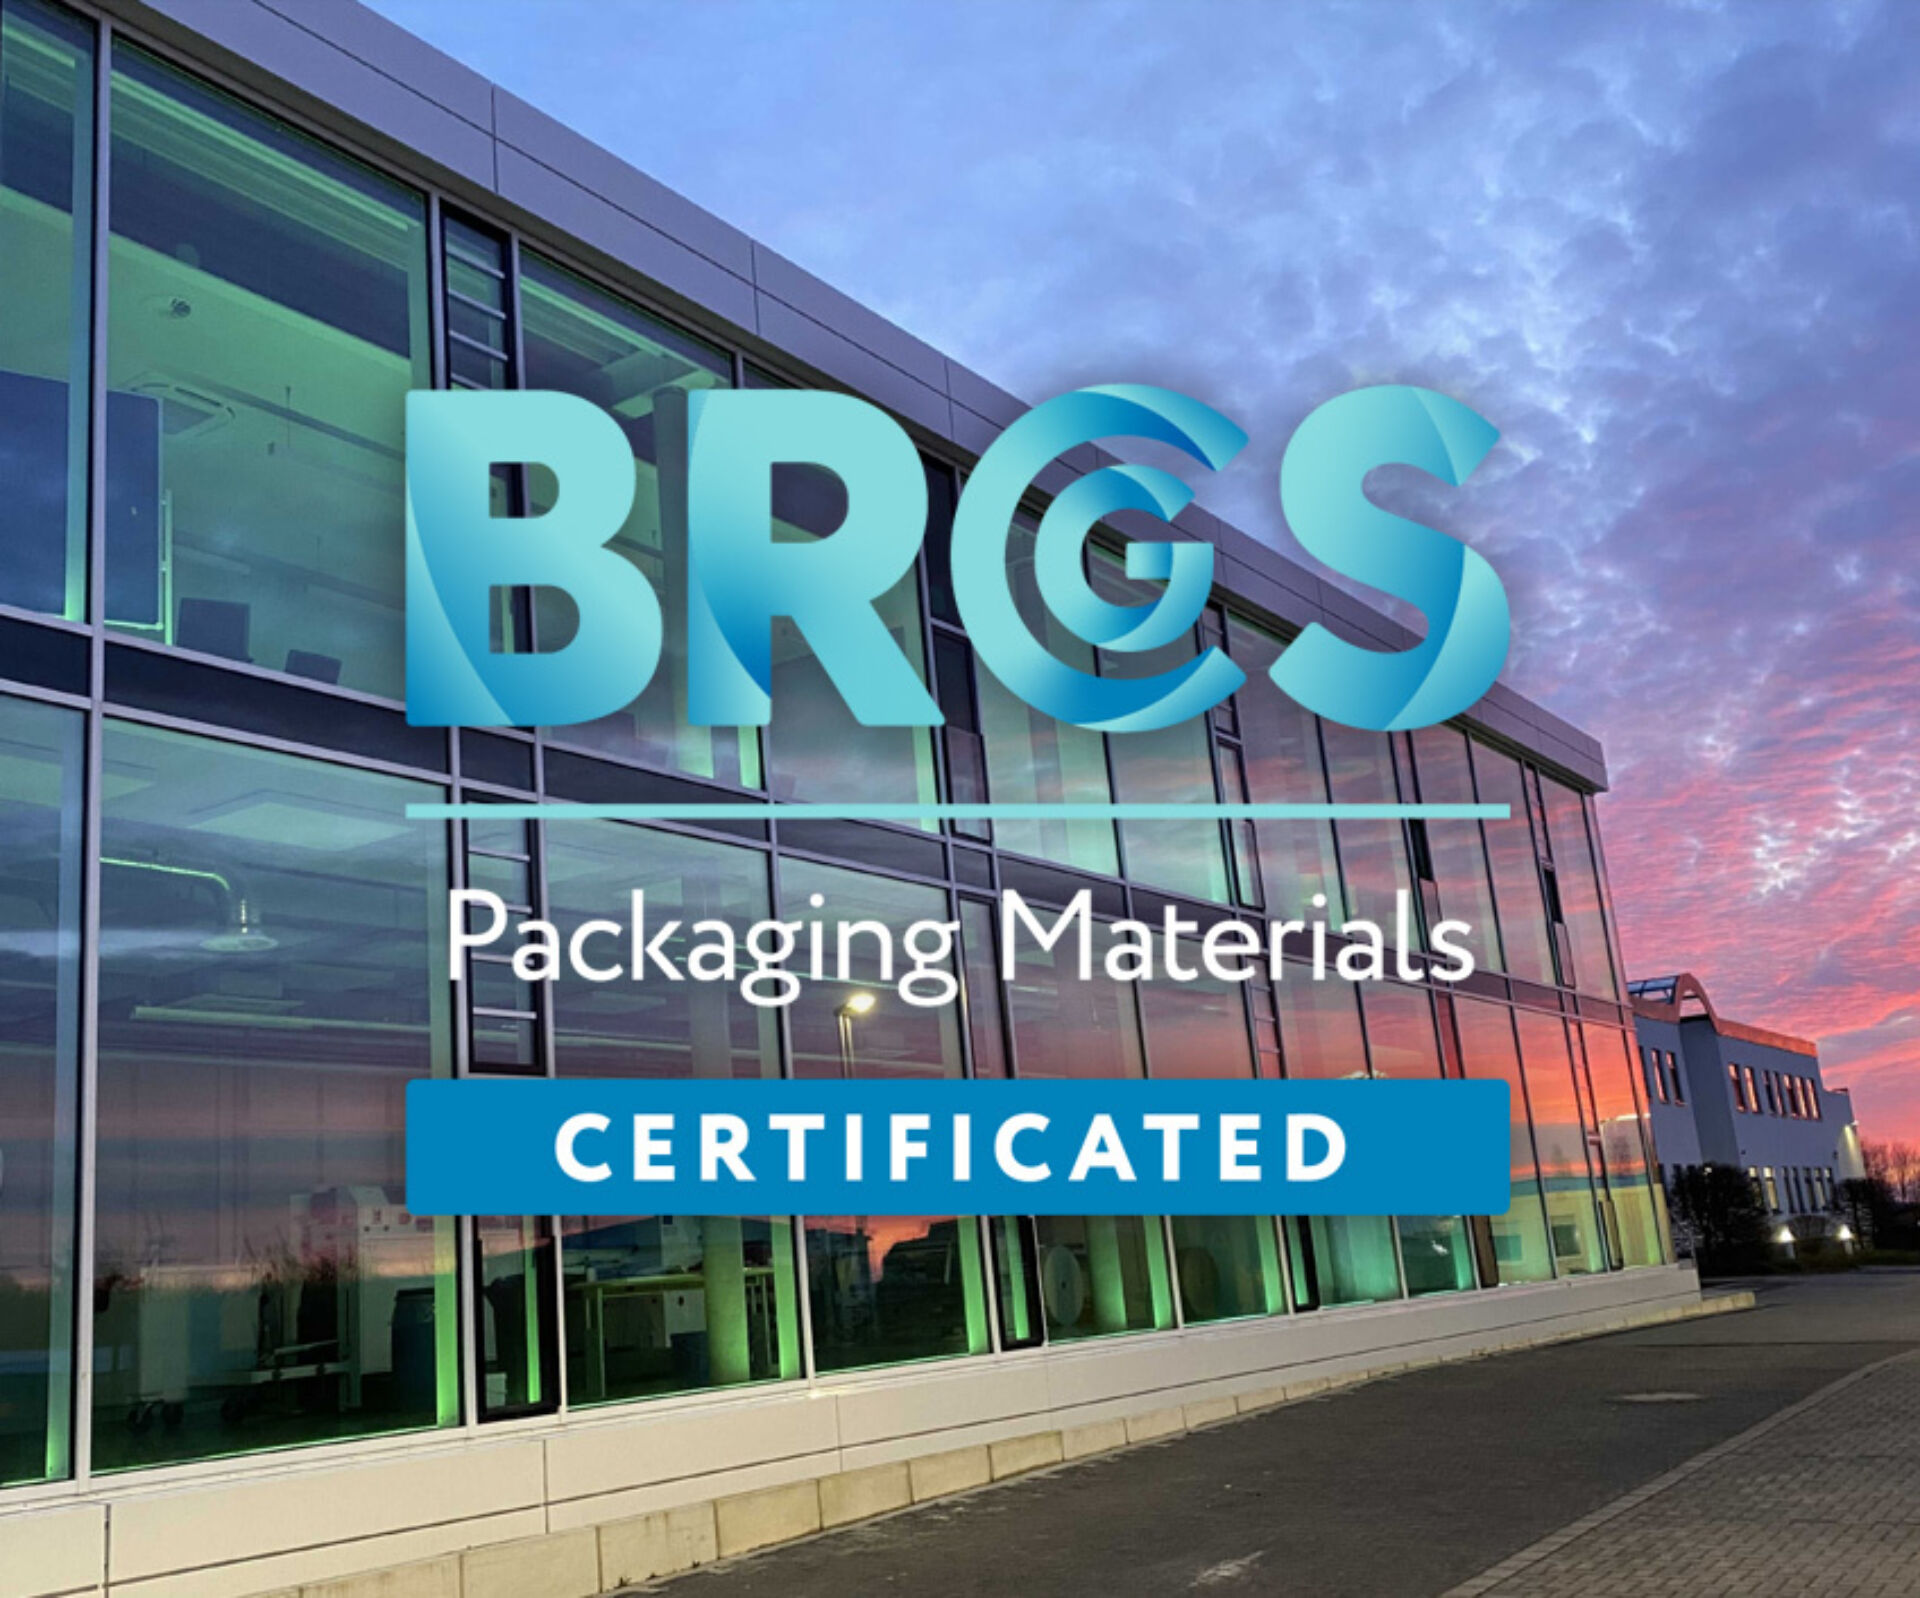 WEBER Verpackungen hat erneut die BRCGS Packaging Zertifizierung erhalten